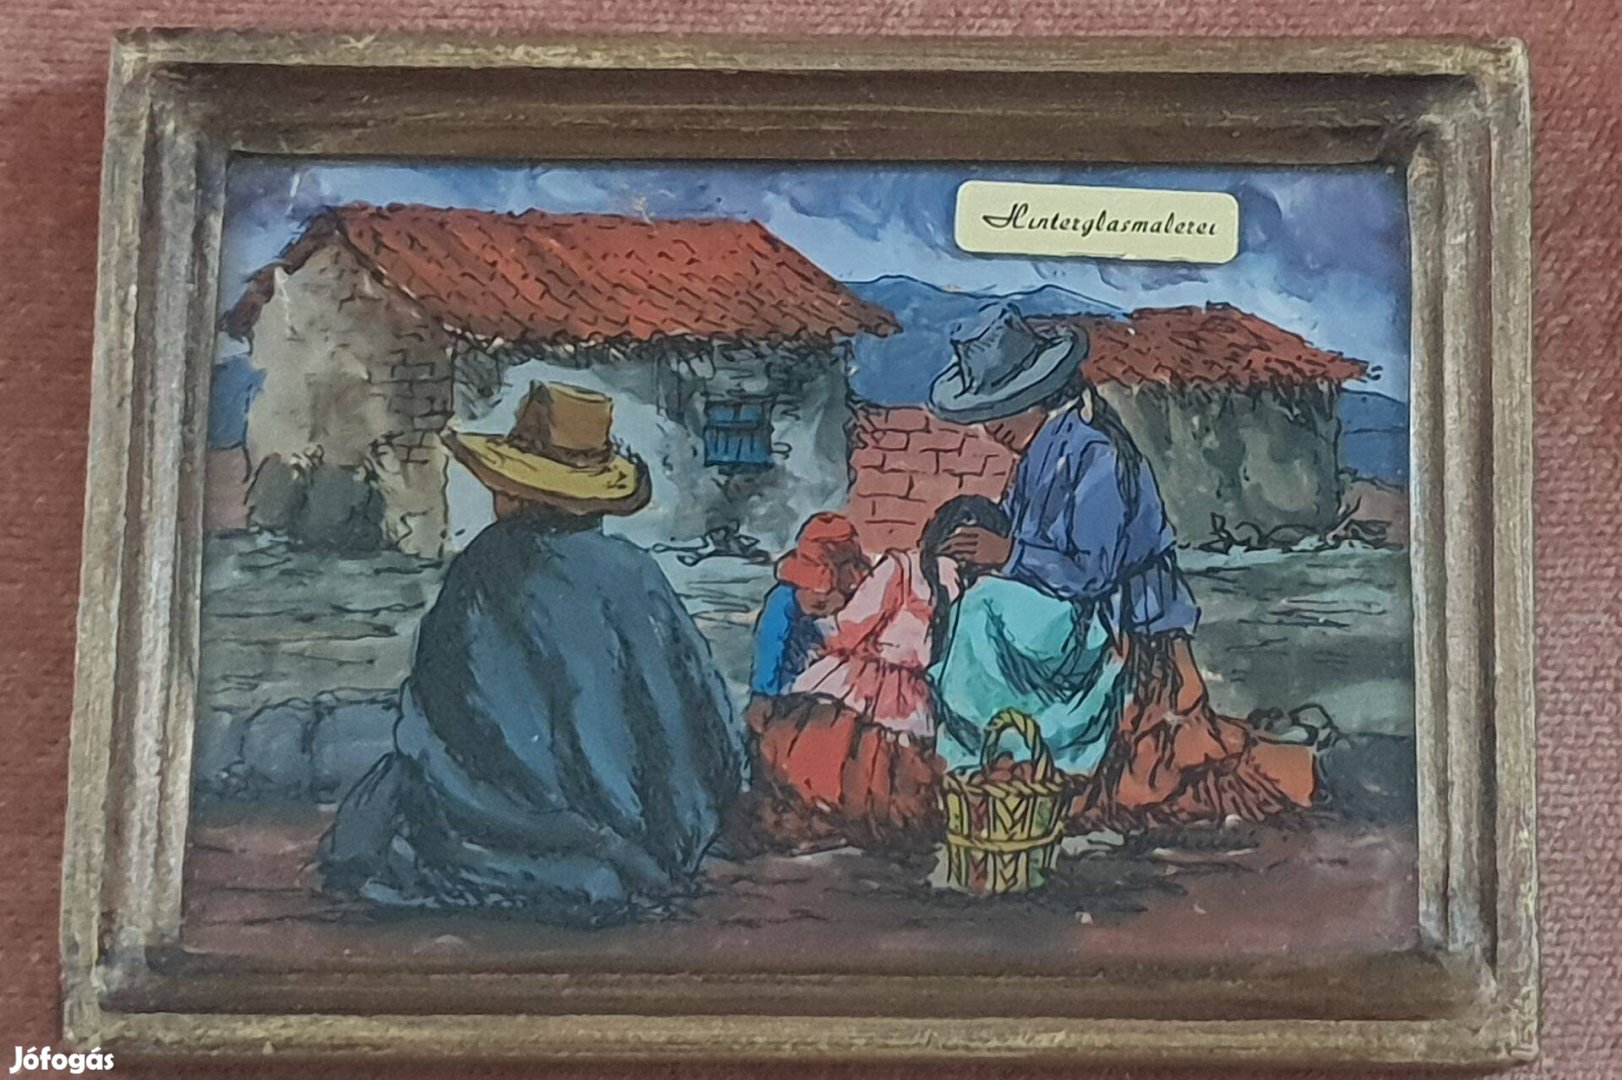 Üvegfestmény - Üvegkép - Hinterglasmalerei 15 x 11 cm Peruból